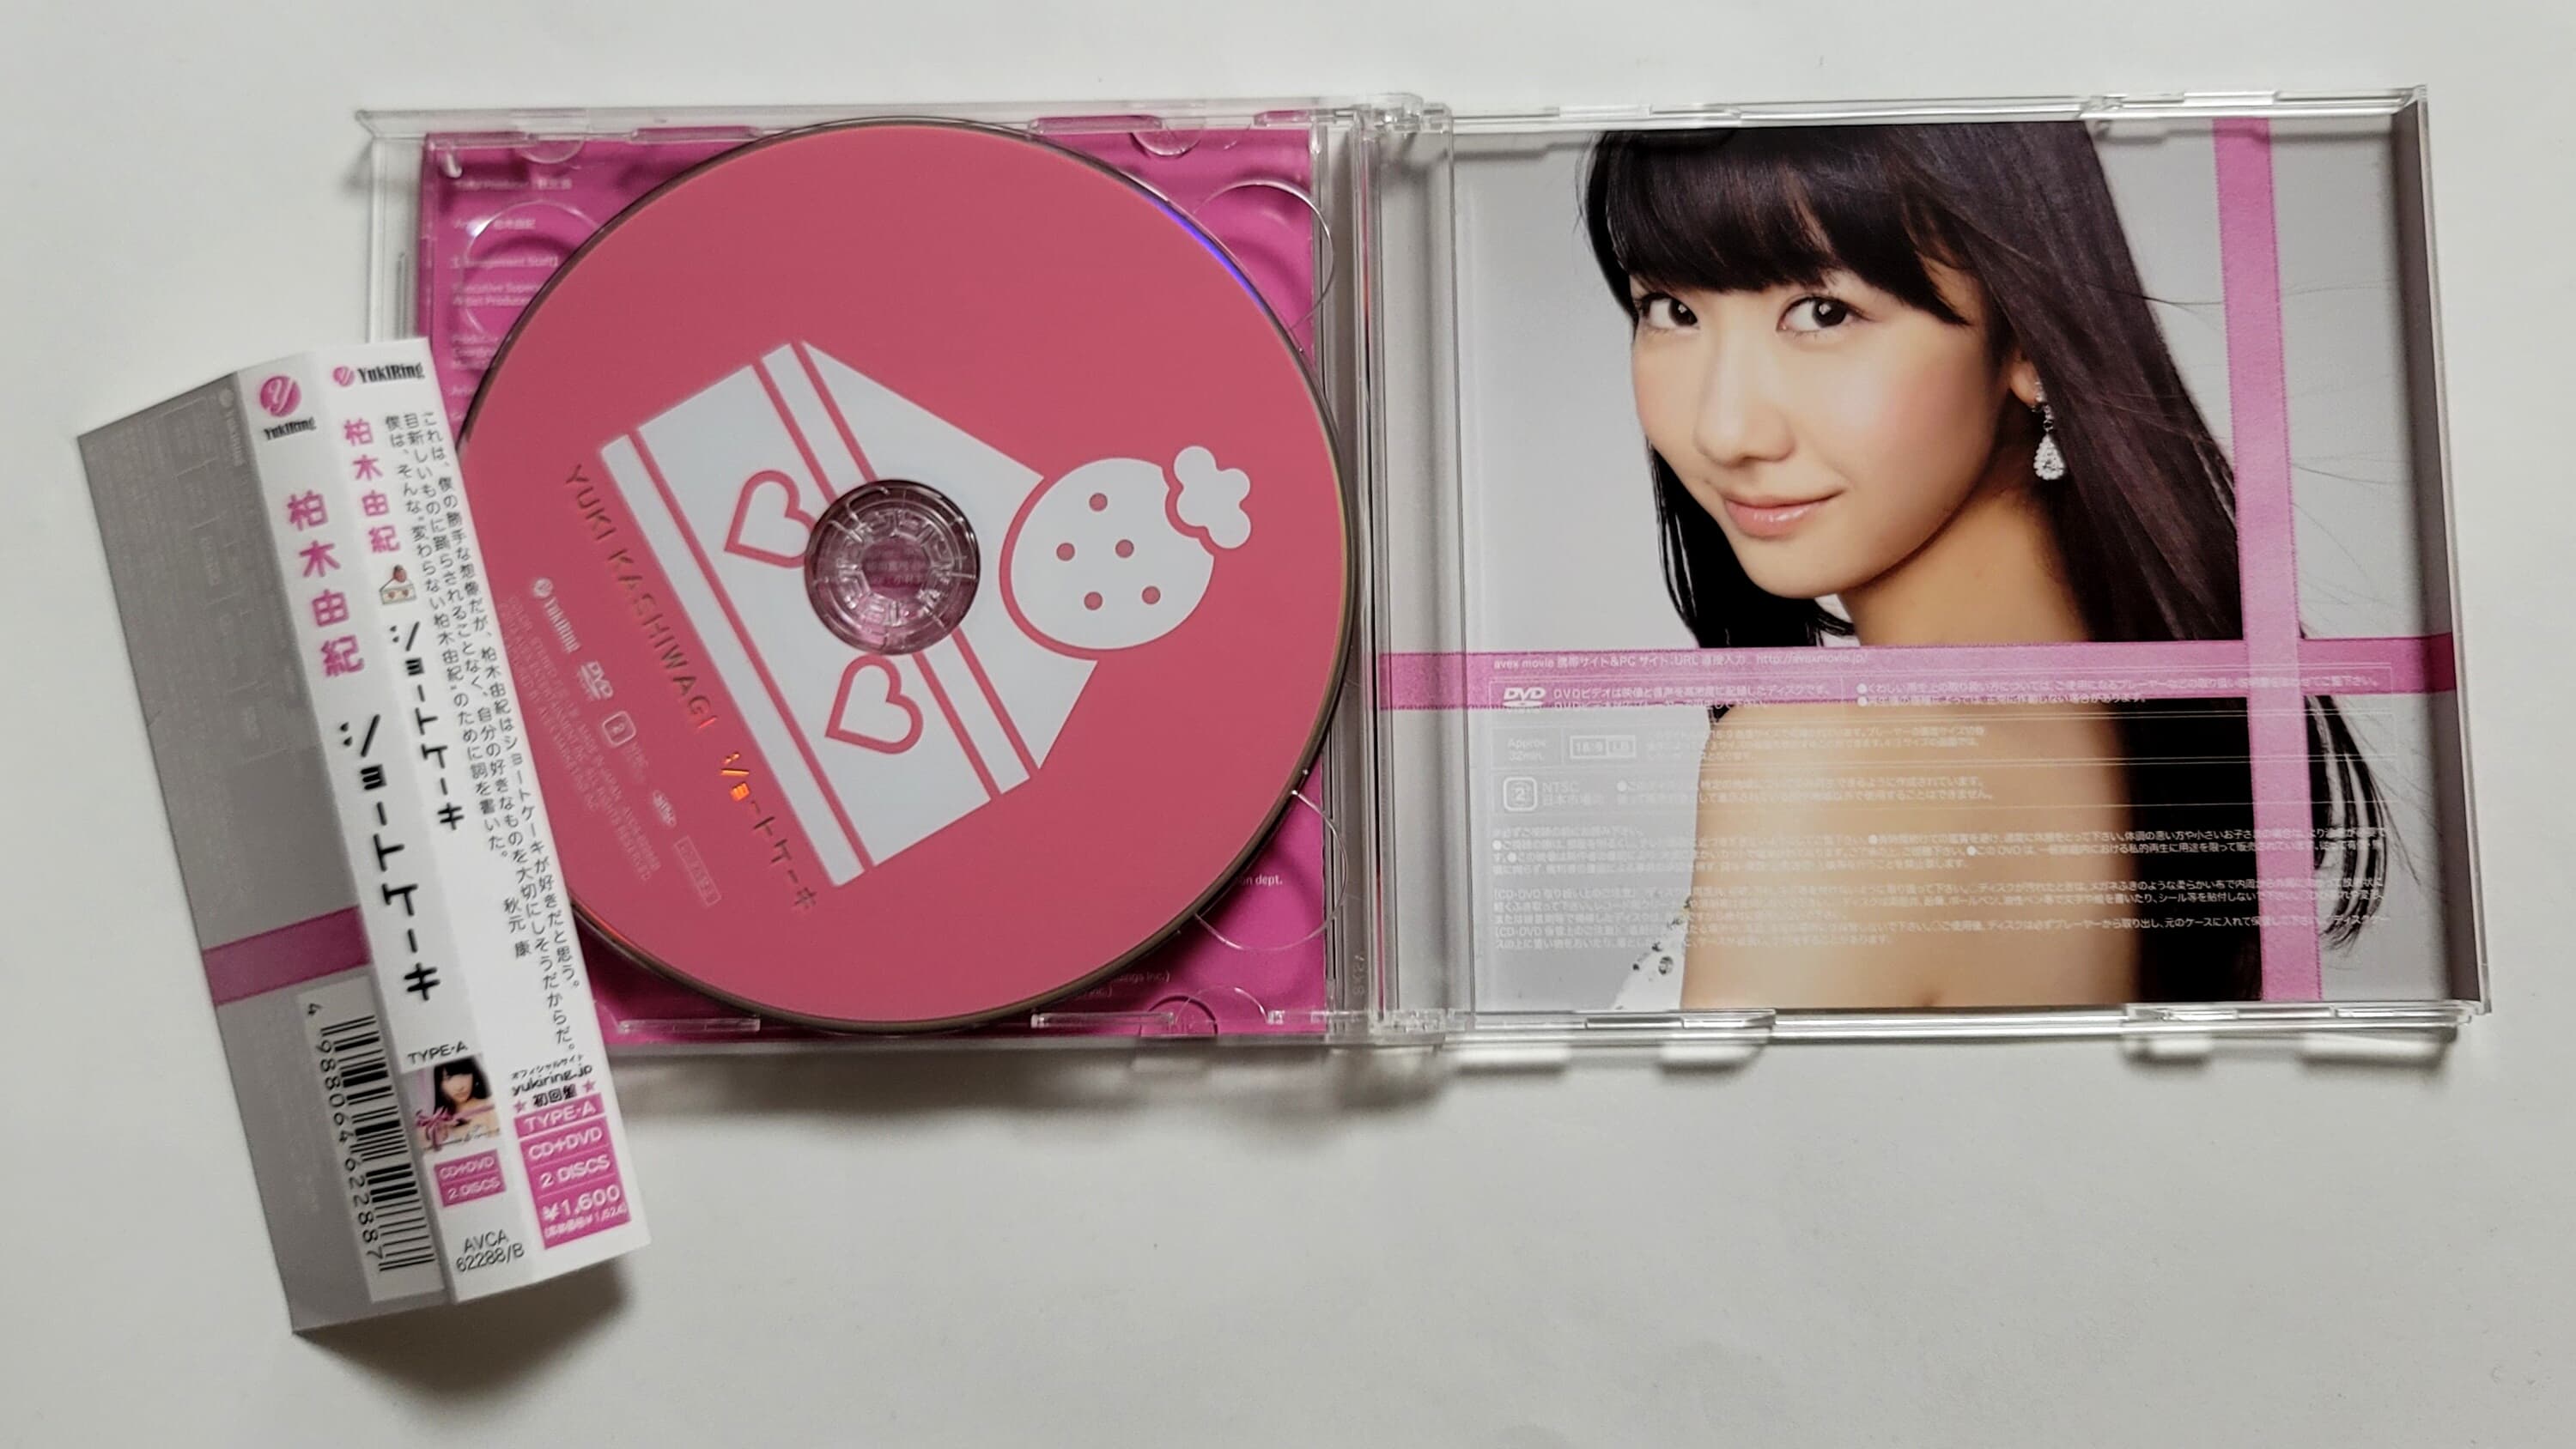 (일본반 초판 한정반 CD+DVD 포토카드 2매 동봉) Kashiwagi Yuki (카시와기 유키 / 柏木由紀) - ショ-トケ-キ